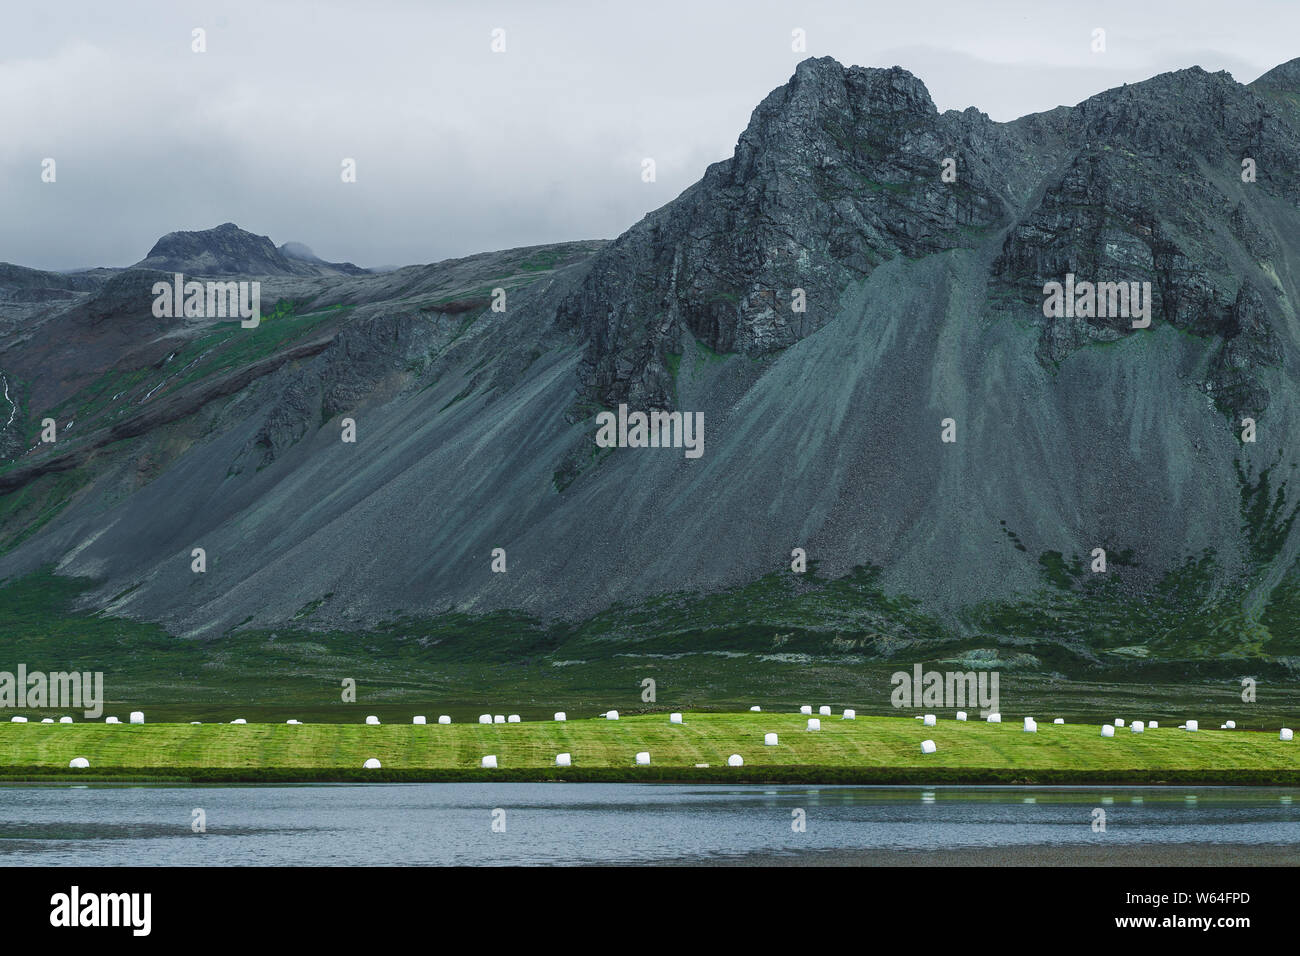 Weißer Kunststoff Silage gewickelten Ballen mit Heu auf grünem Gras Hügel in der Nähe von See Islands. Landwirtschaft in Skandinavien, Europa. Sonnigen Sommer Wetter, Natur bac Stockfoto